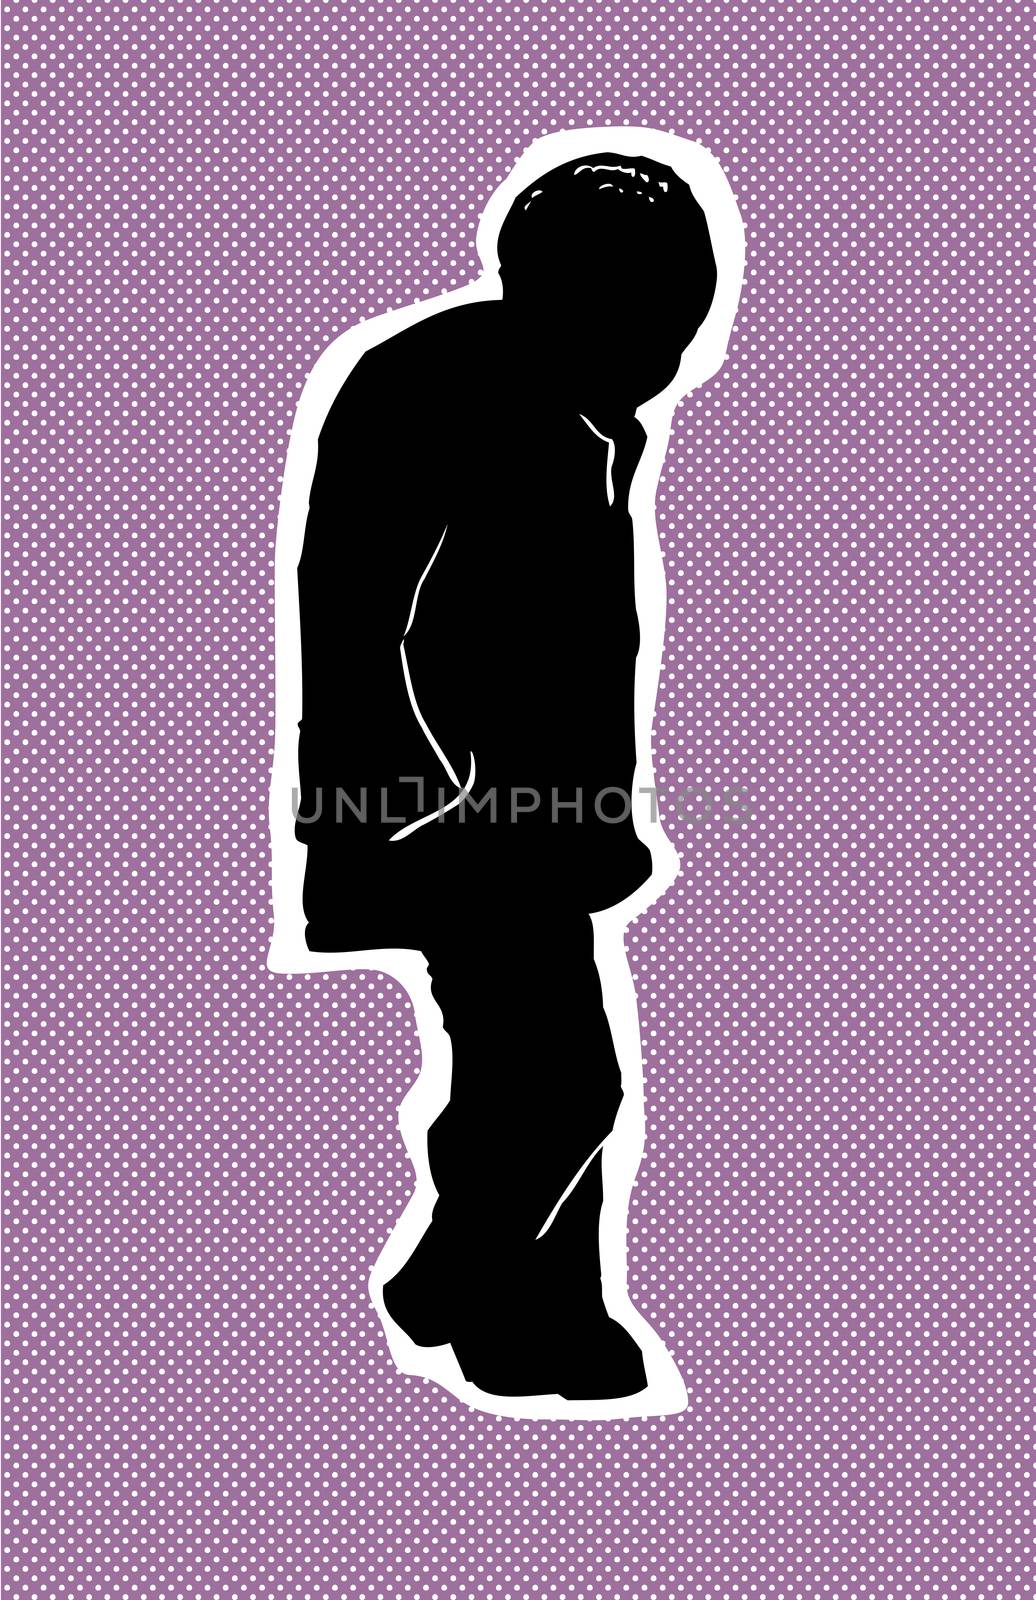 Single older Black man walking over purple halftone background